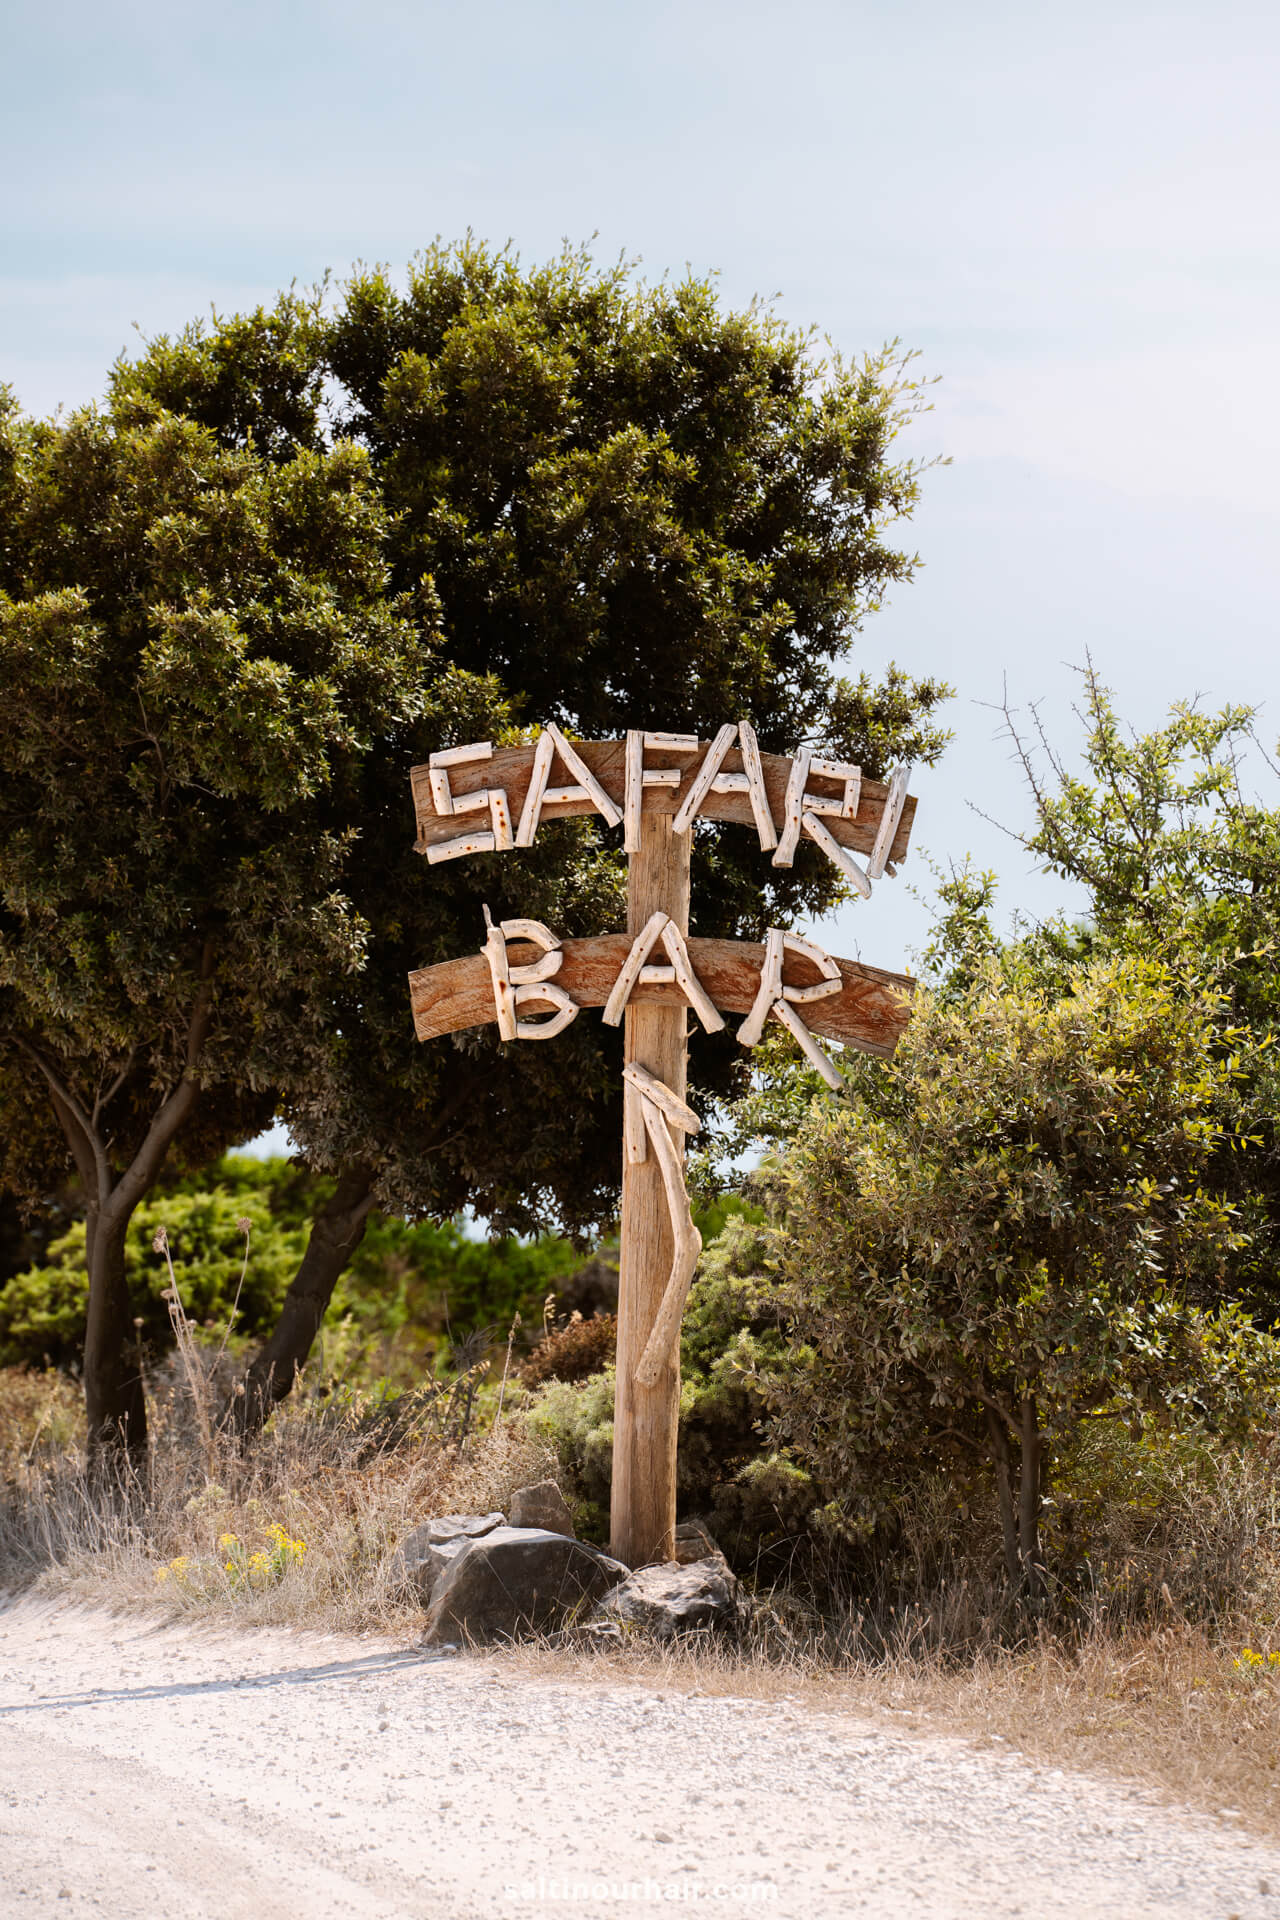 Safari Bar Kamenjak National Park Croatia